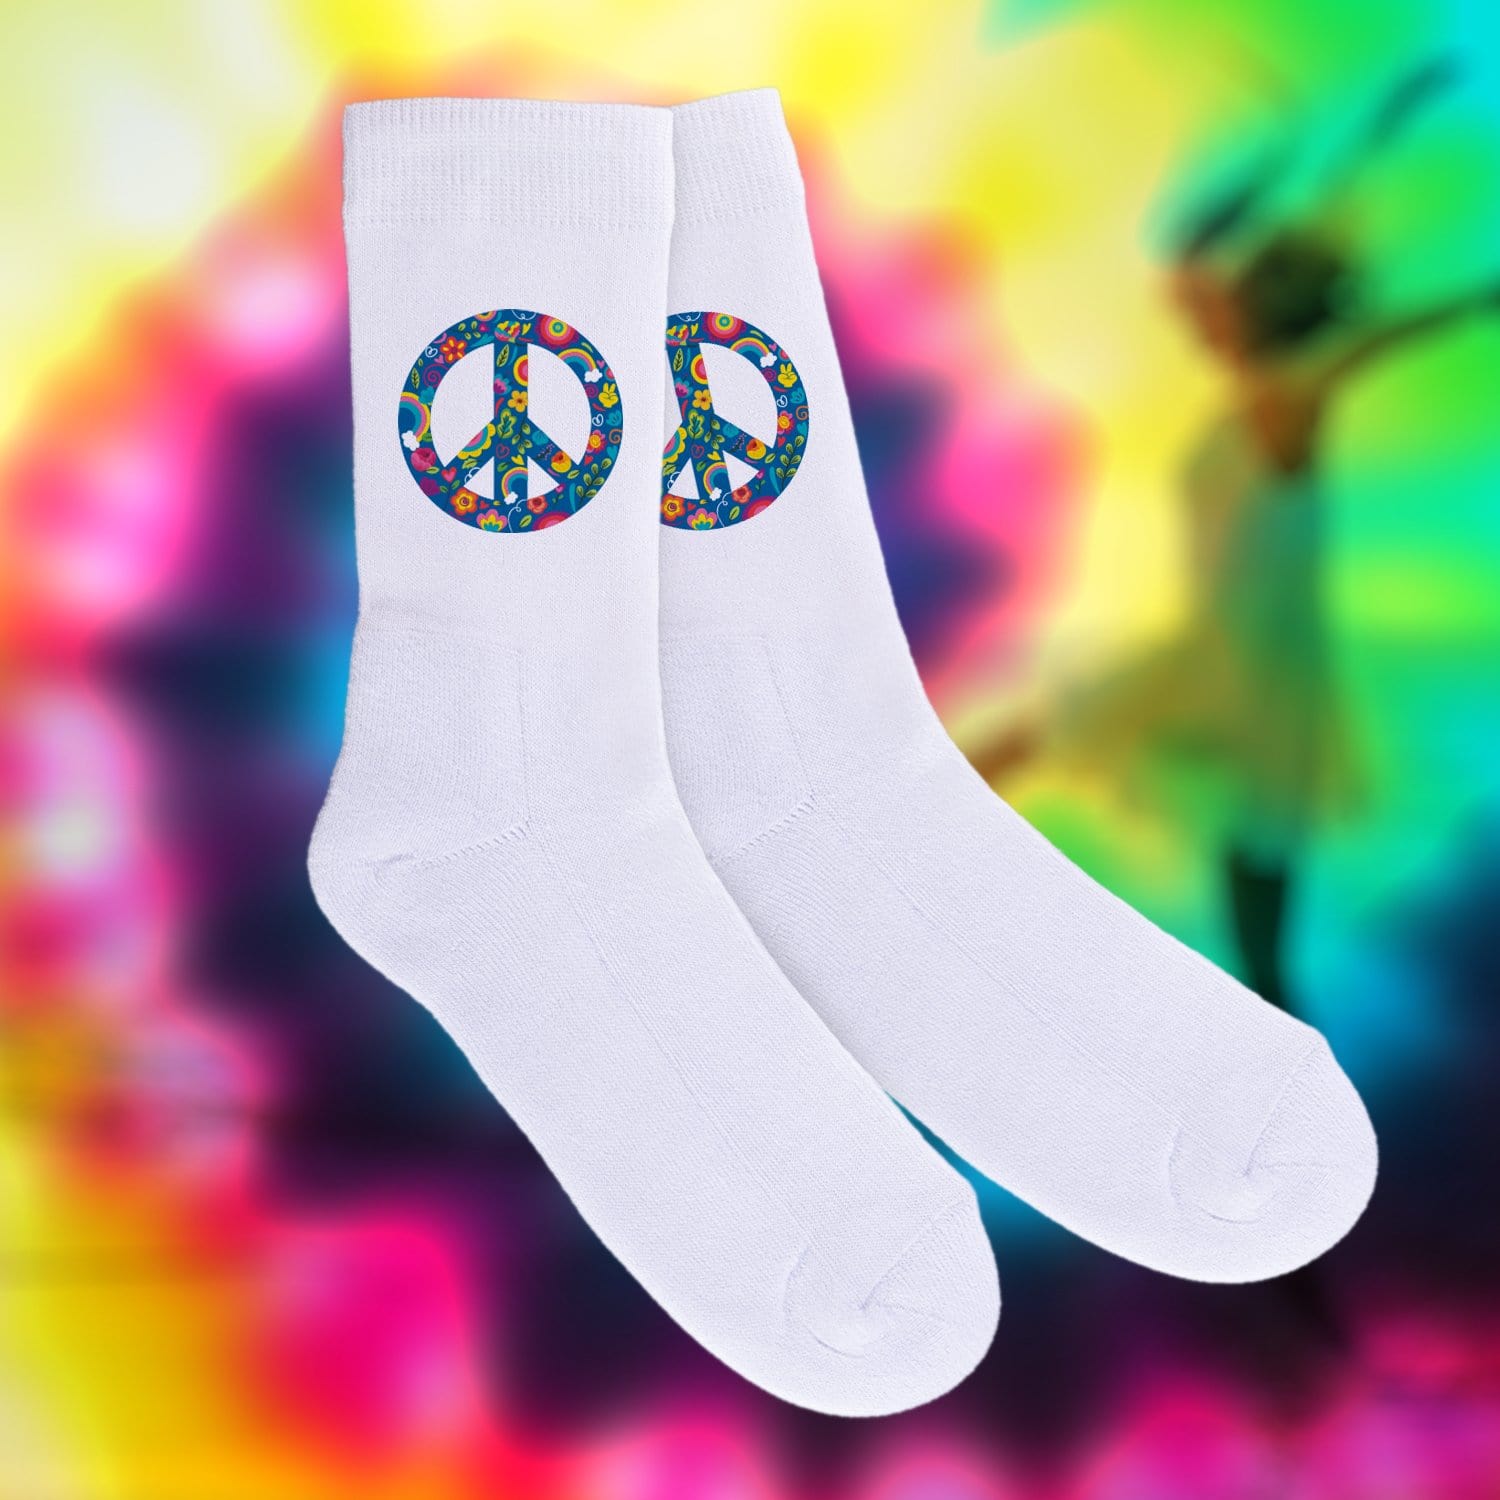 Socken bedruckt mit Peace-Zeichen in Regenbogenfarben